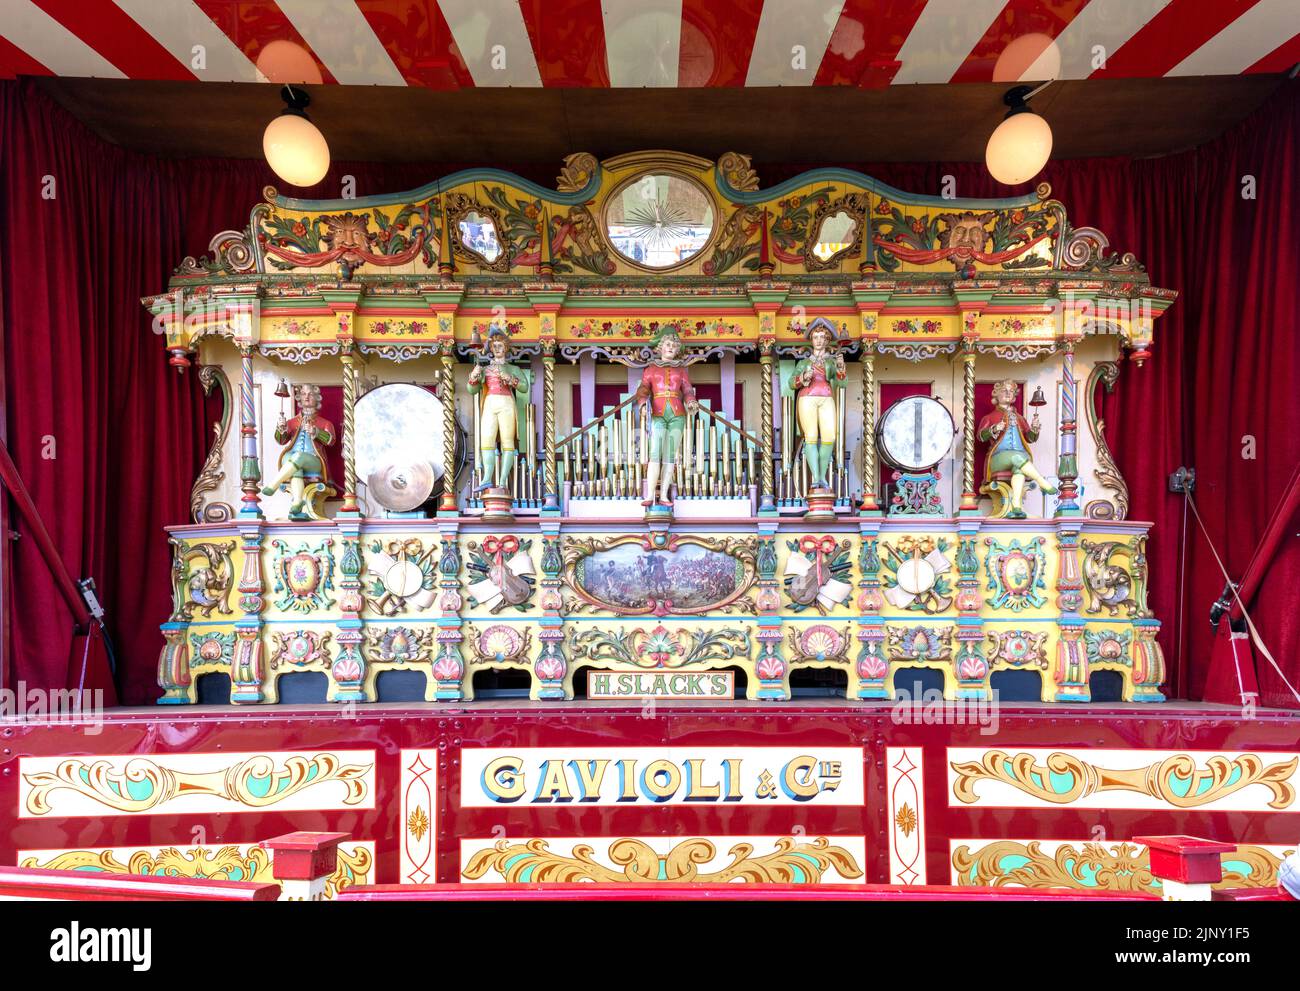 Gavioli de 1898 87 teclas, órgano victoriano ornamentado en el recinto ferial. Foto de stock